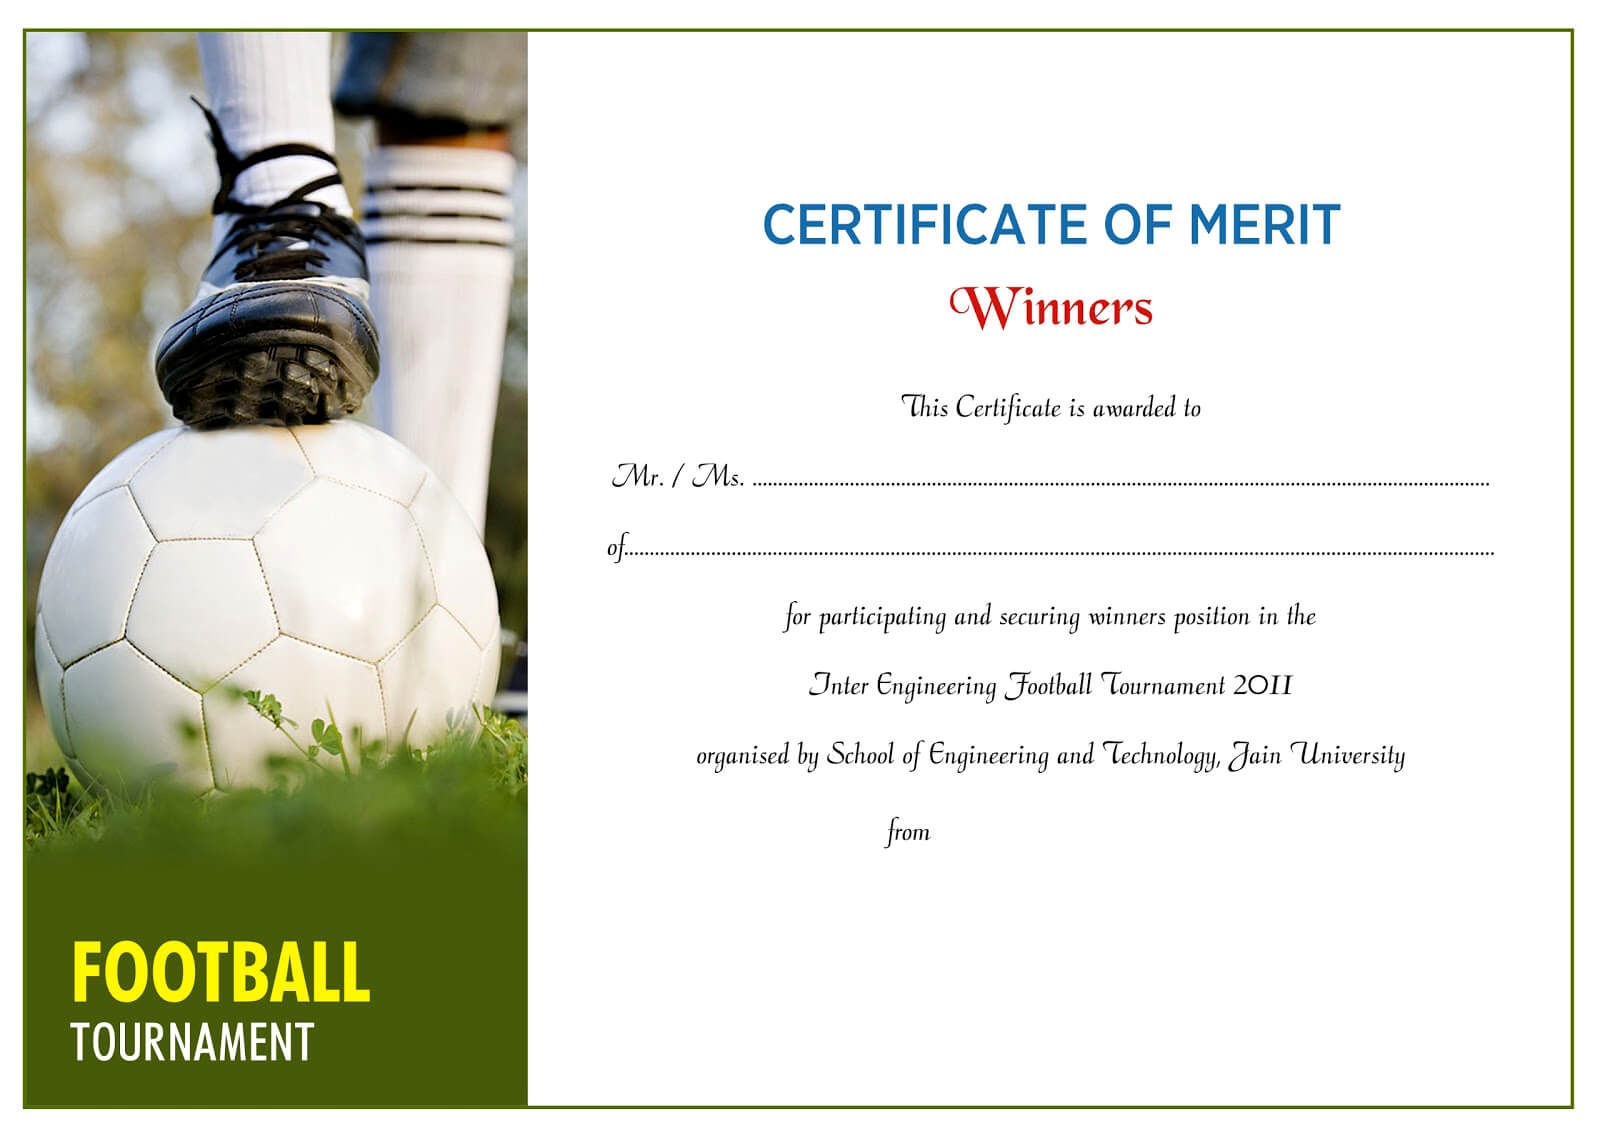 Certificate Design Idea For Football Certificate In Football Certificate Template